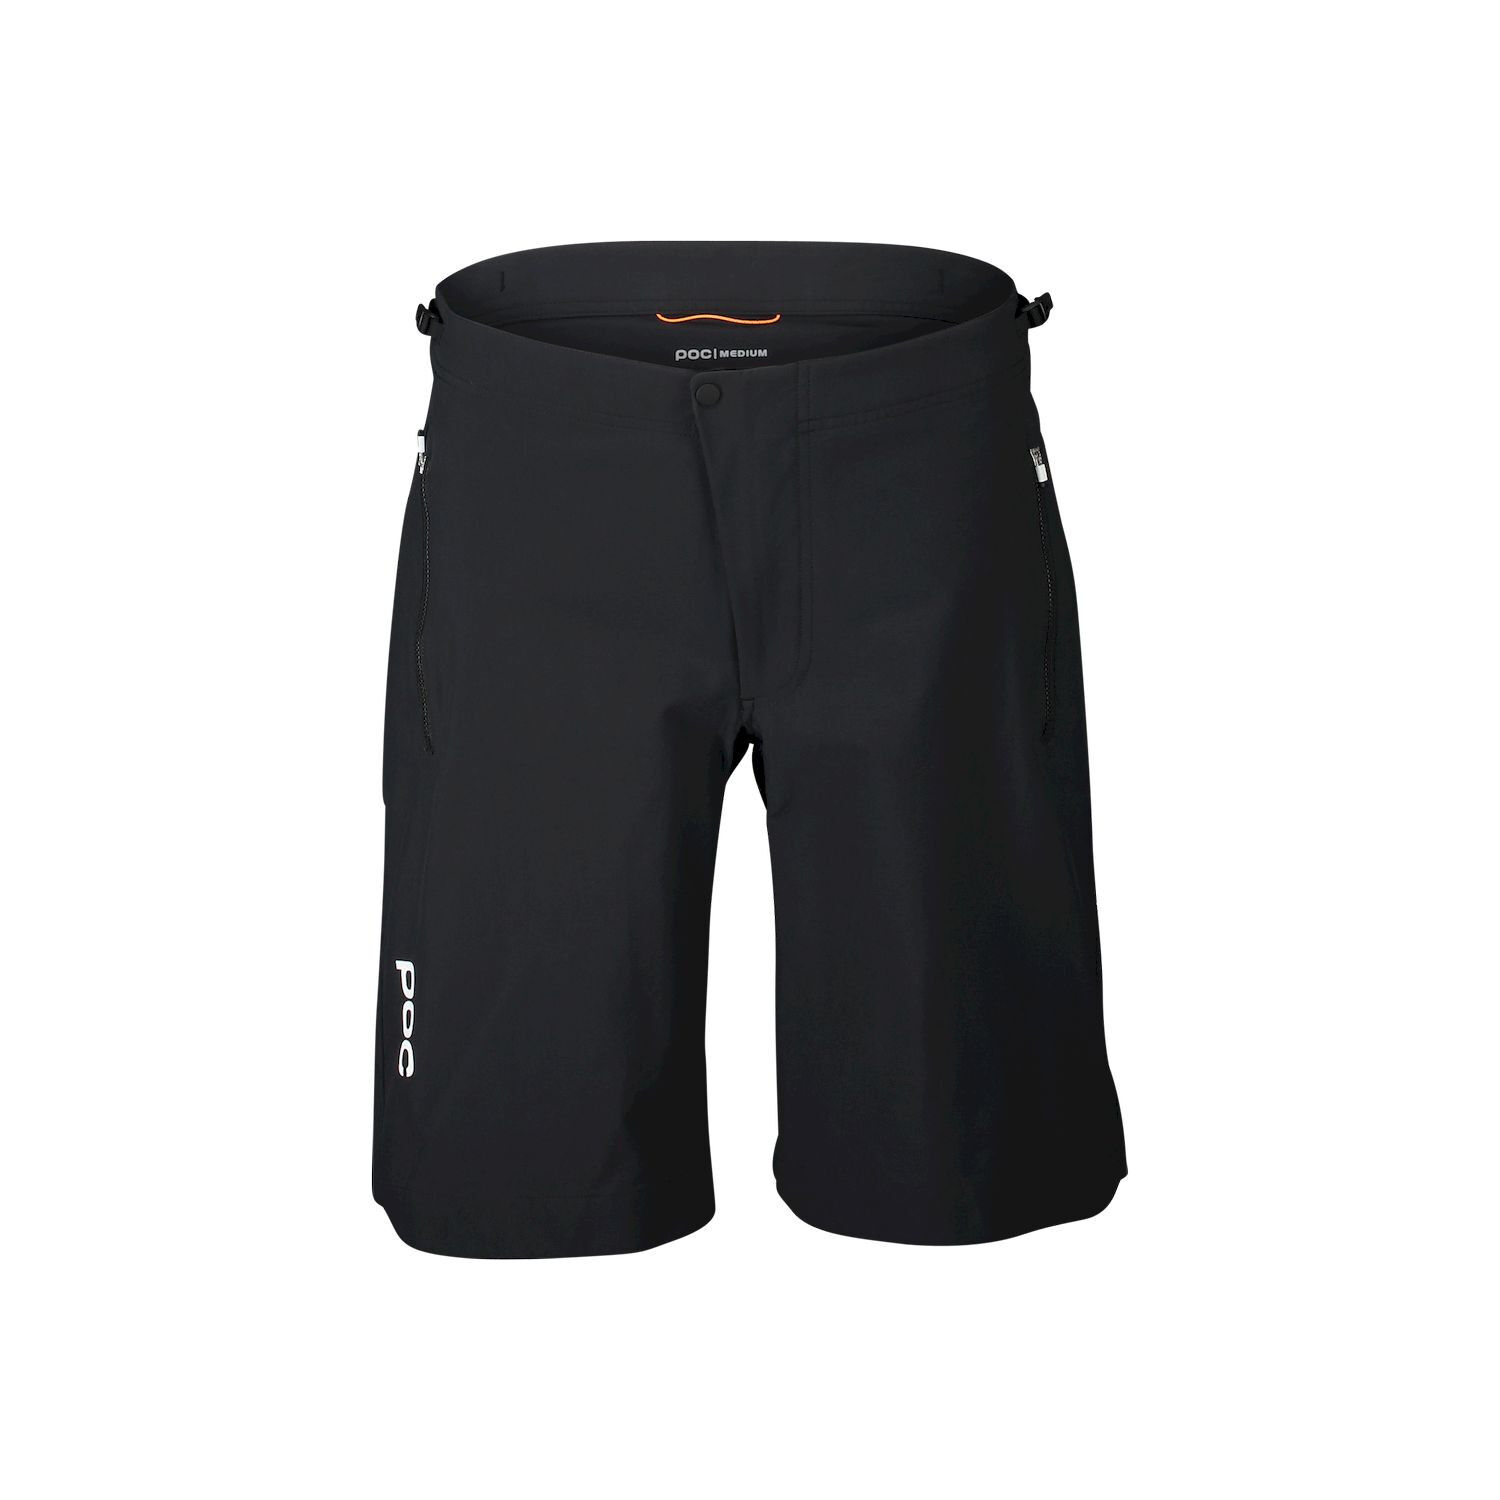 Poc Essential Enduro Short - Pantalones cortos MTB - Mujer